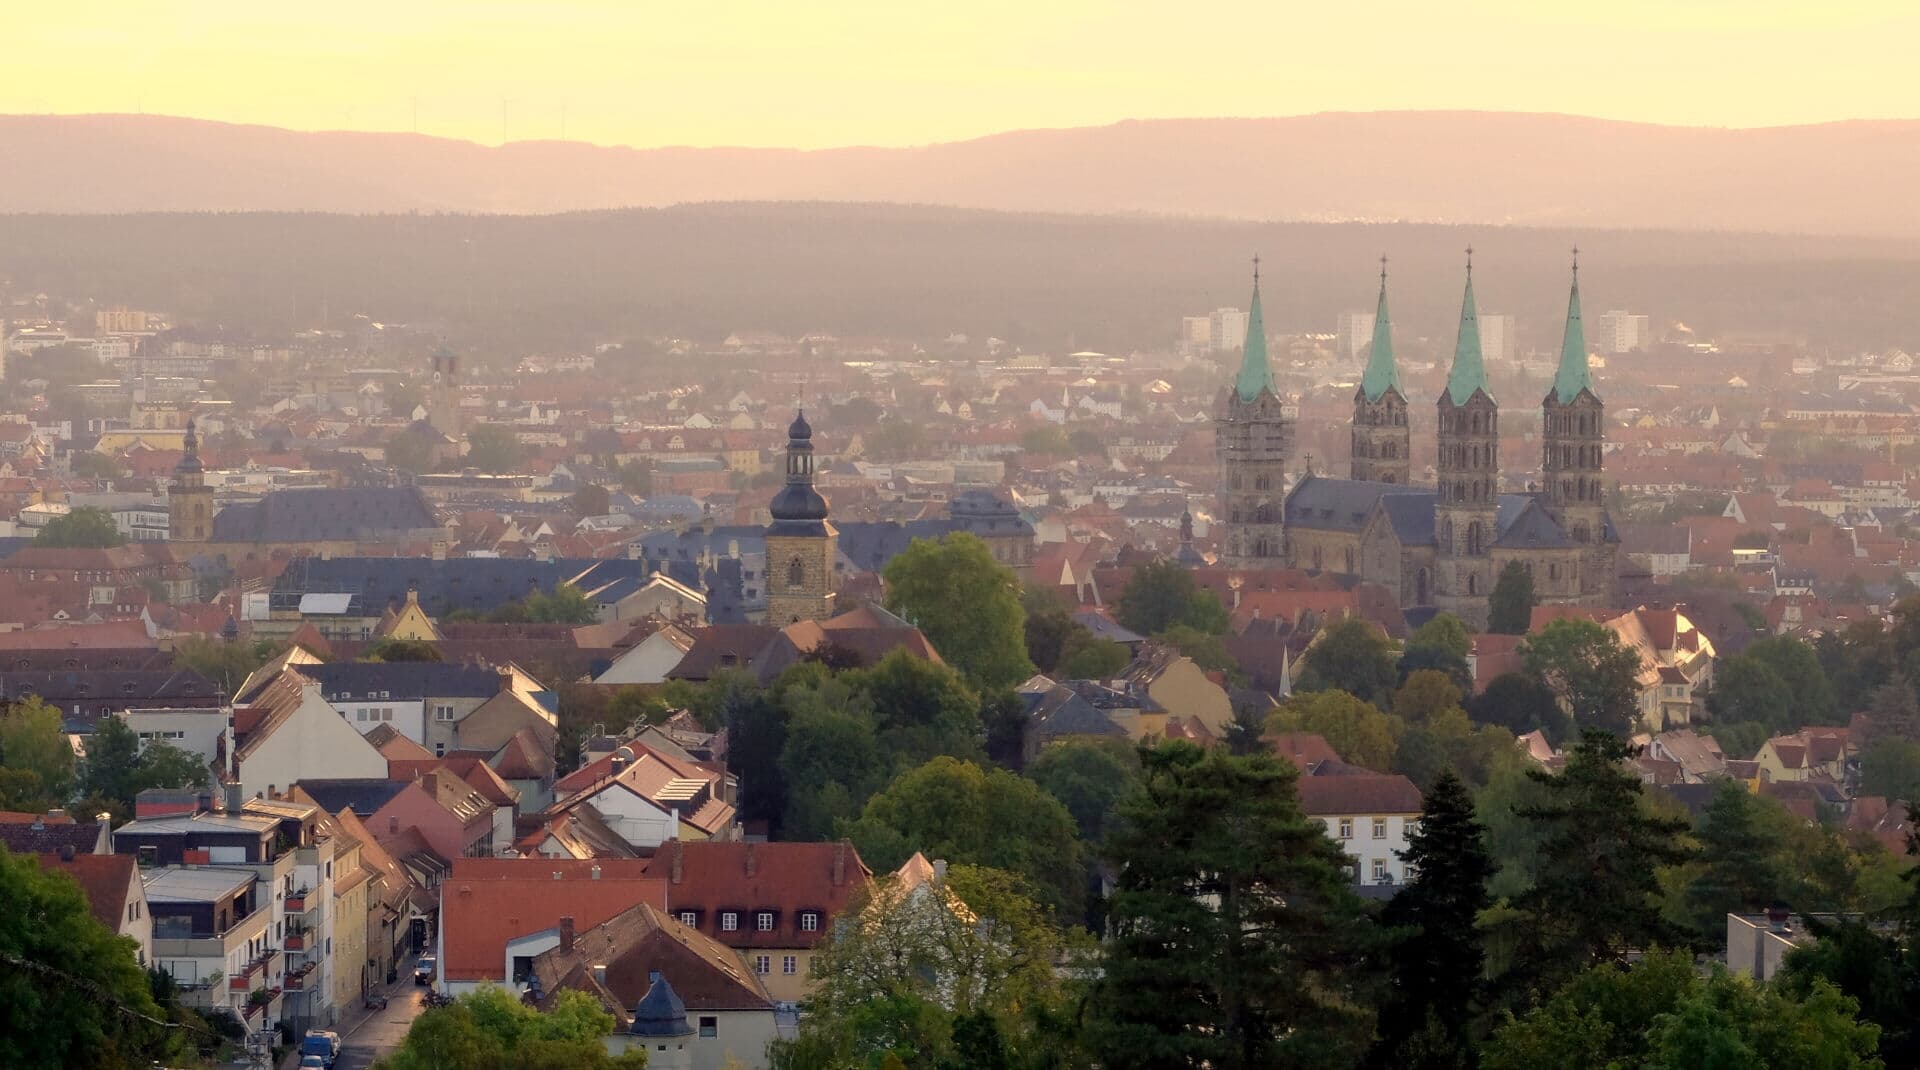 Bamberg photo